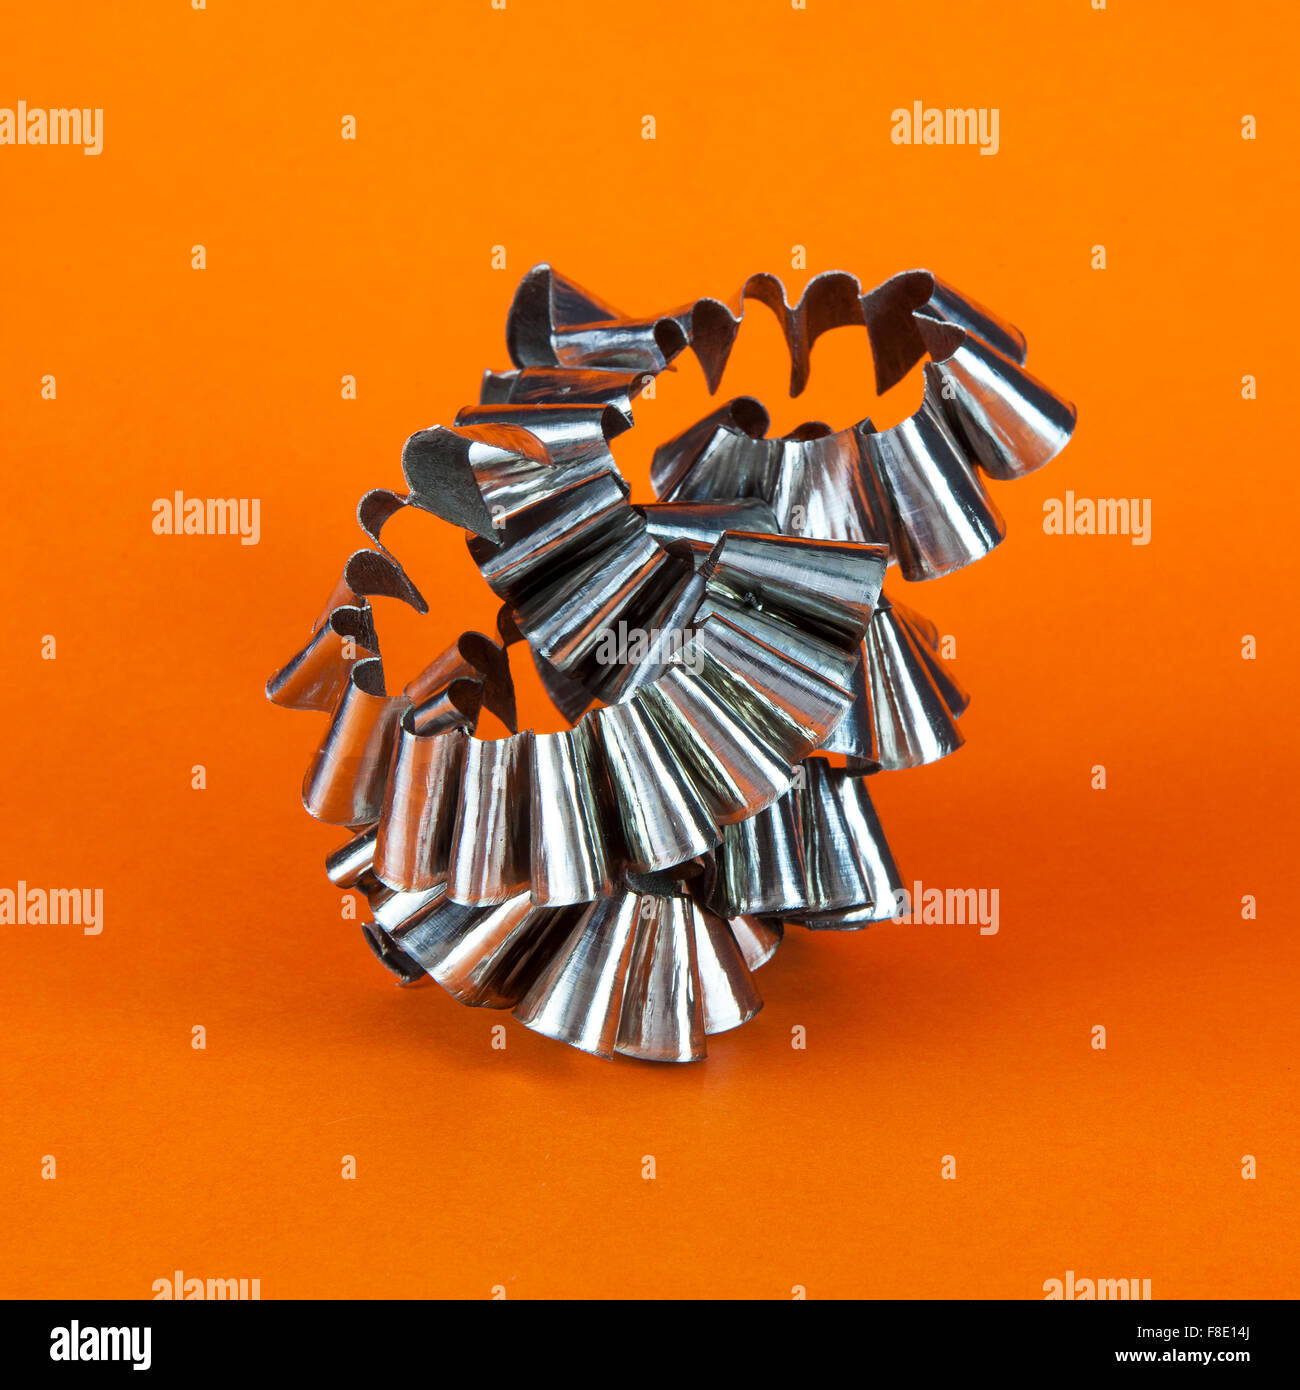 Presenza di limatura metallica su sfondo arancione Foto Stock